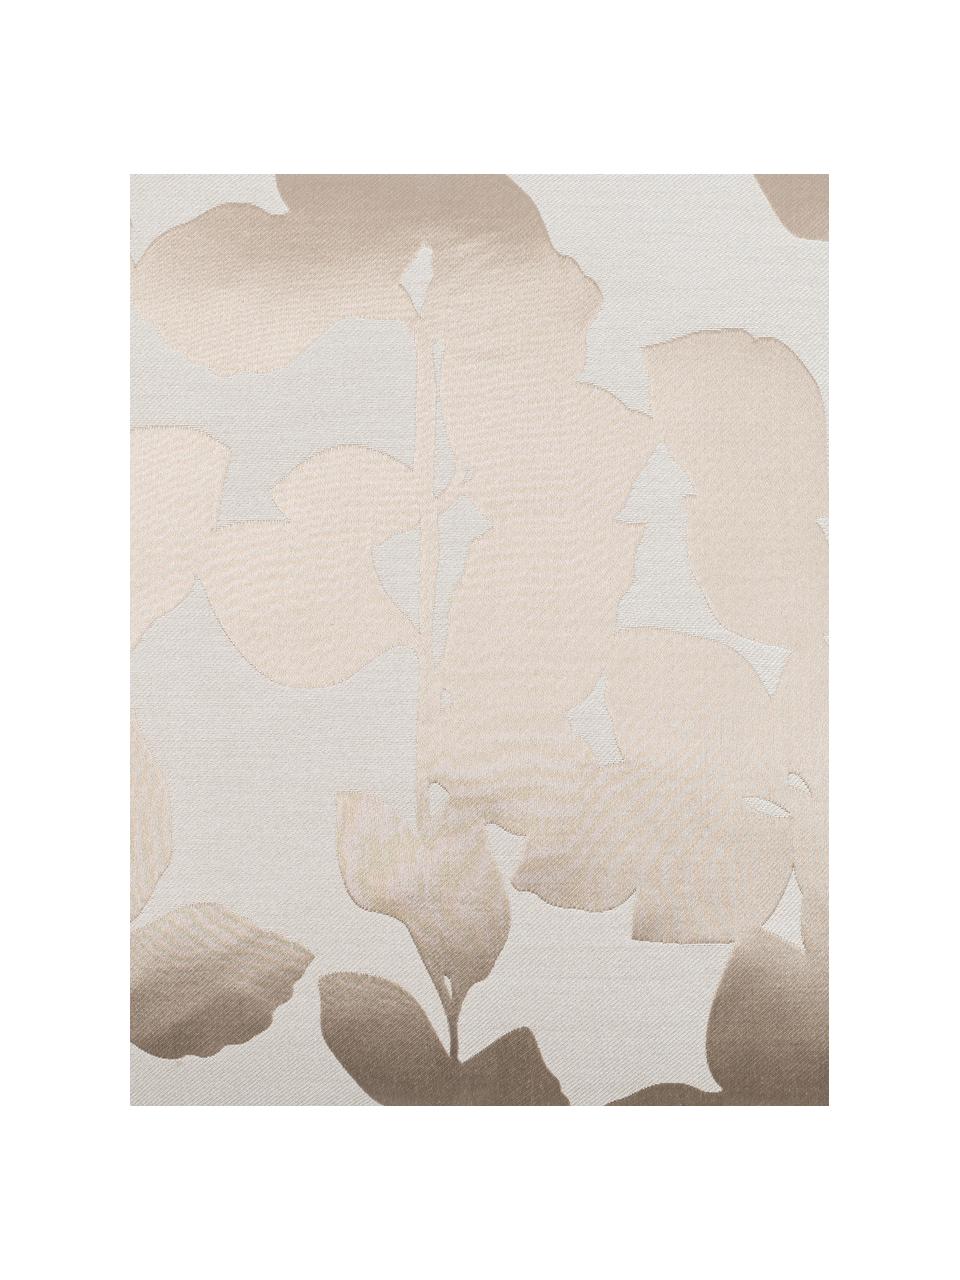 Kissenhülle Ariela in Beige mit glänzenden Blättermotiven, Vorderseite: 35% Polyester, 34% Viskos, Rückseite: 100% Polyester, Beige, B 40 x L 40 cm